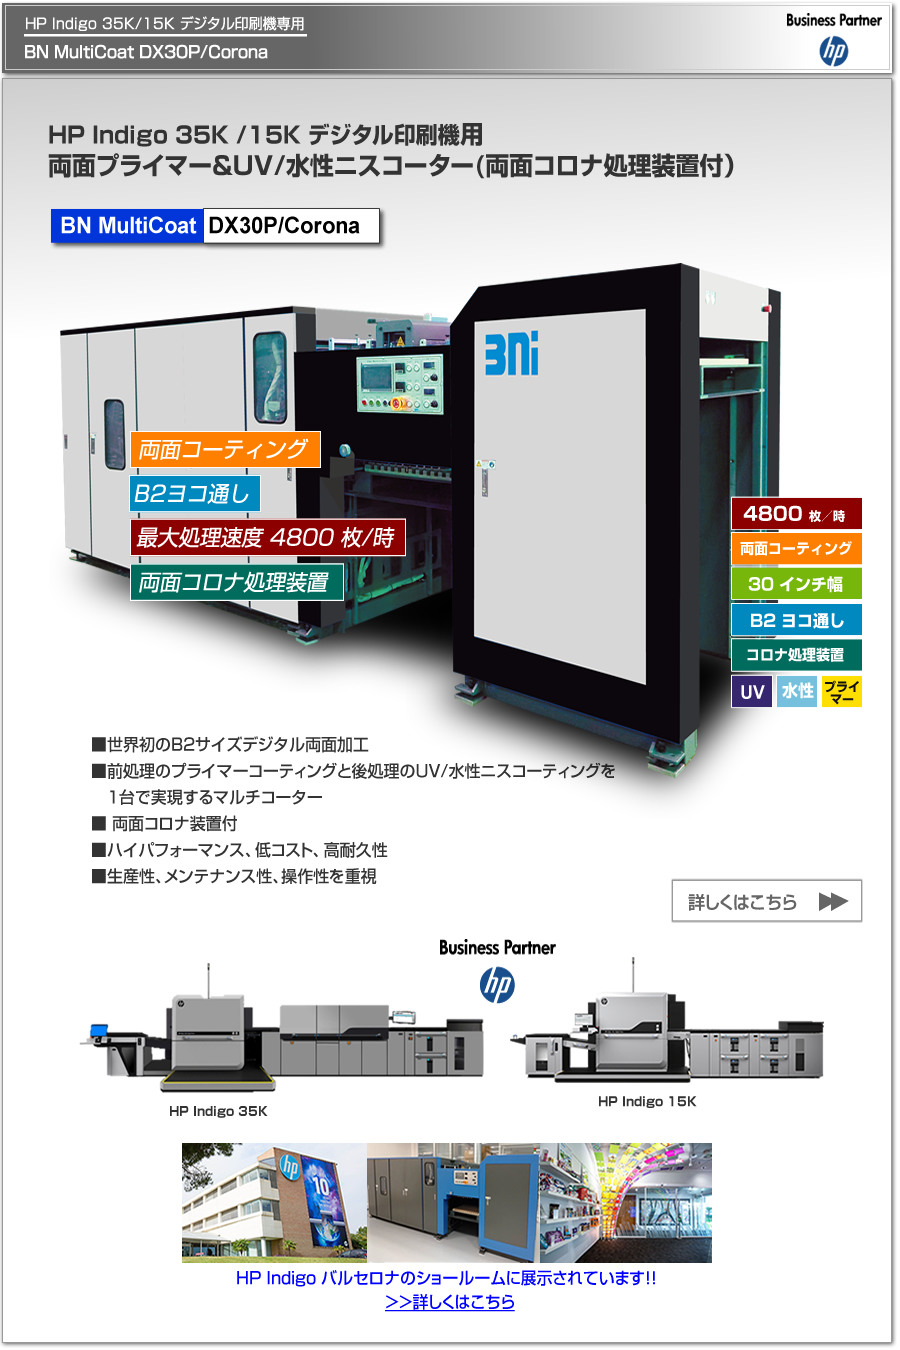 BN MultiCoat DX30P/Coronaは、HP Indigo 35K/15K デジタル印刷機専用のプライマー＆UV/水性ニスコーター、一度の紙通しで両面コーティング可能、両面コロナ処理によるプライマー可能、最大処理速度 4,800枚／時、最大用紙サイズ B2 ヨコ通しに対応。